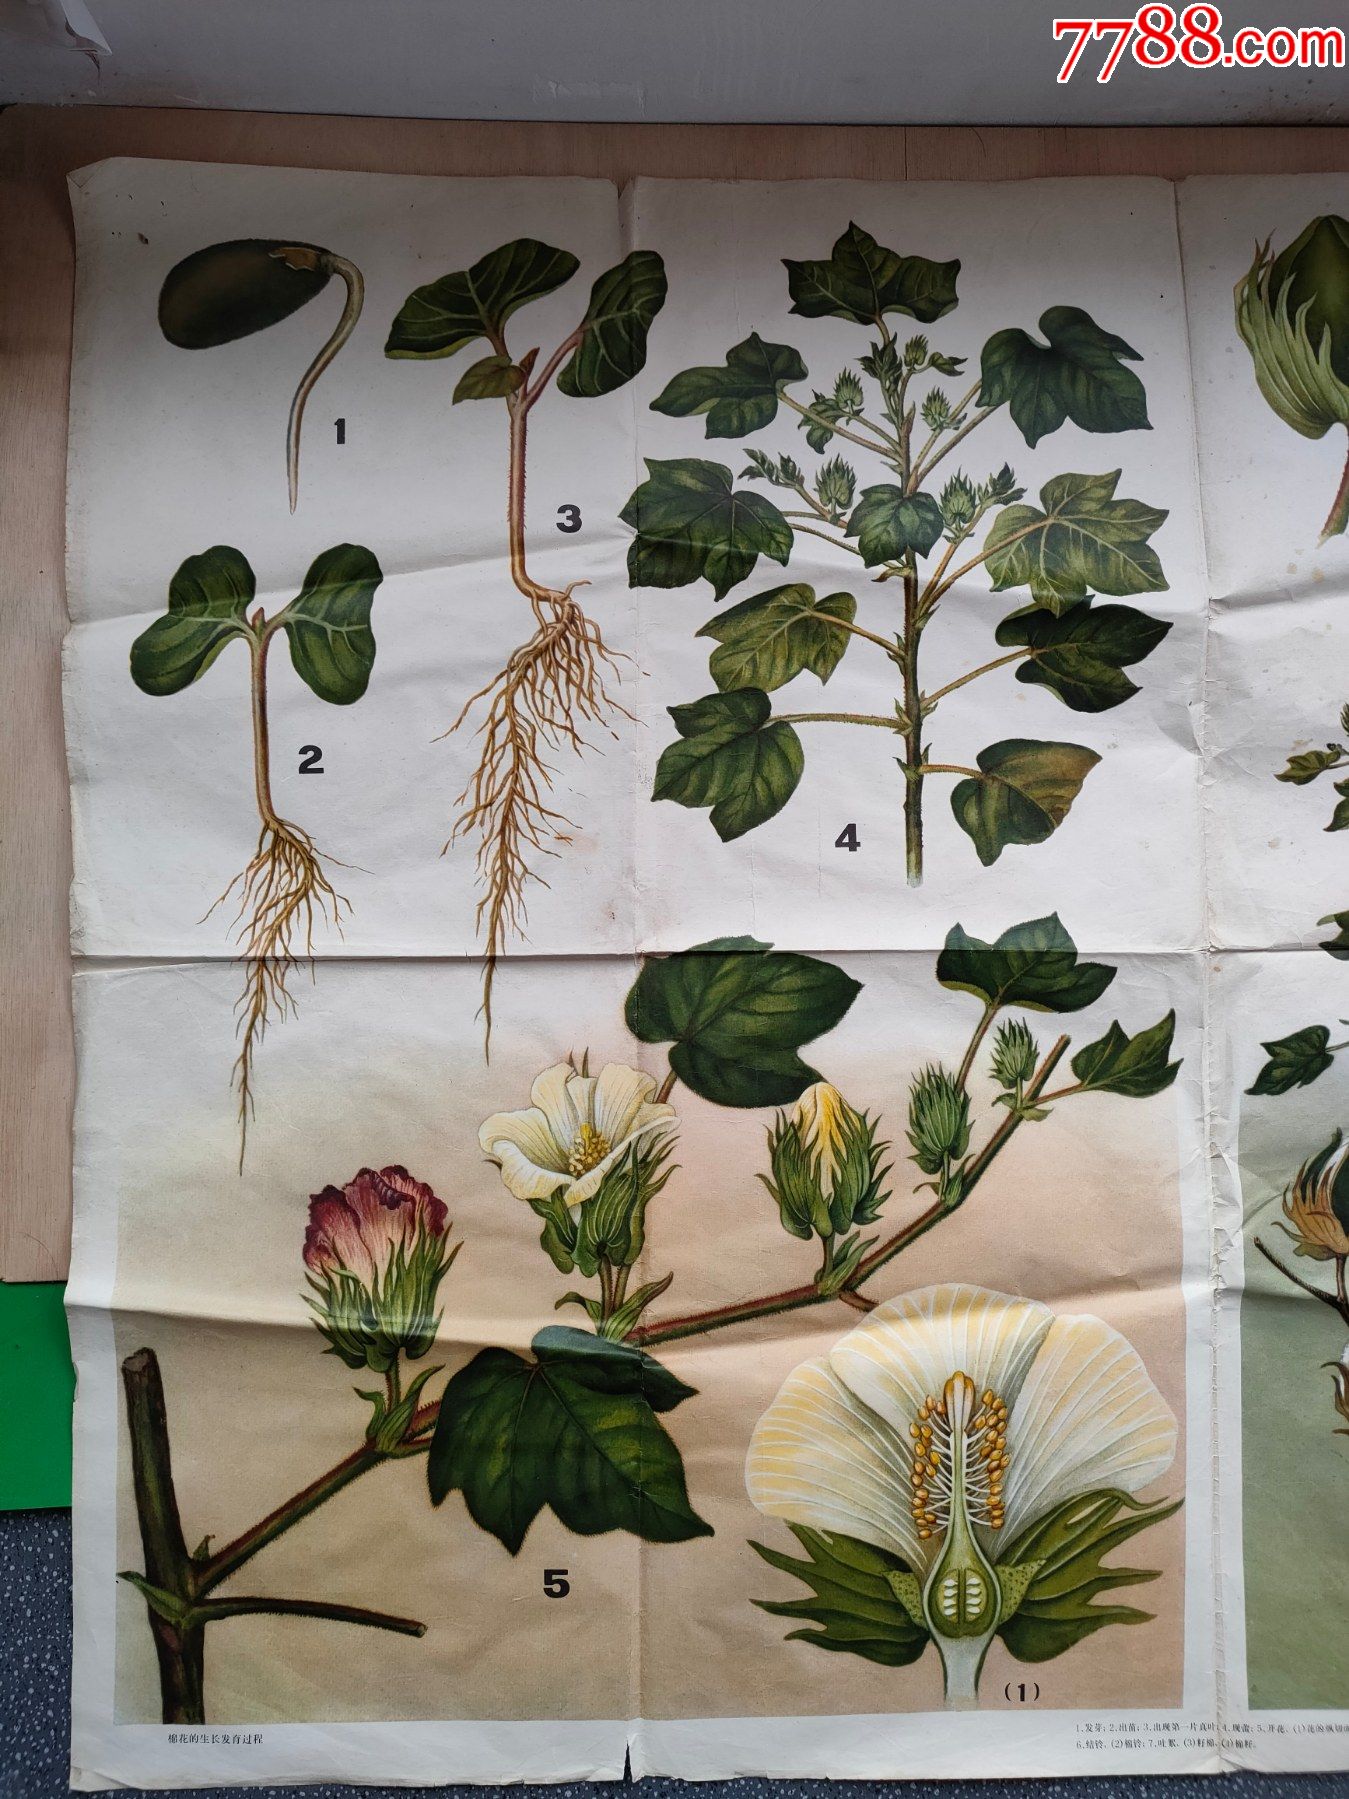 木棉花的生长过程图片